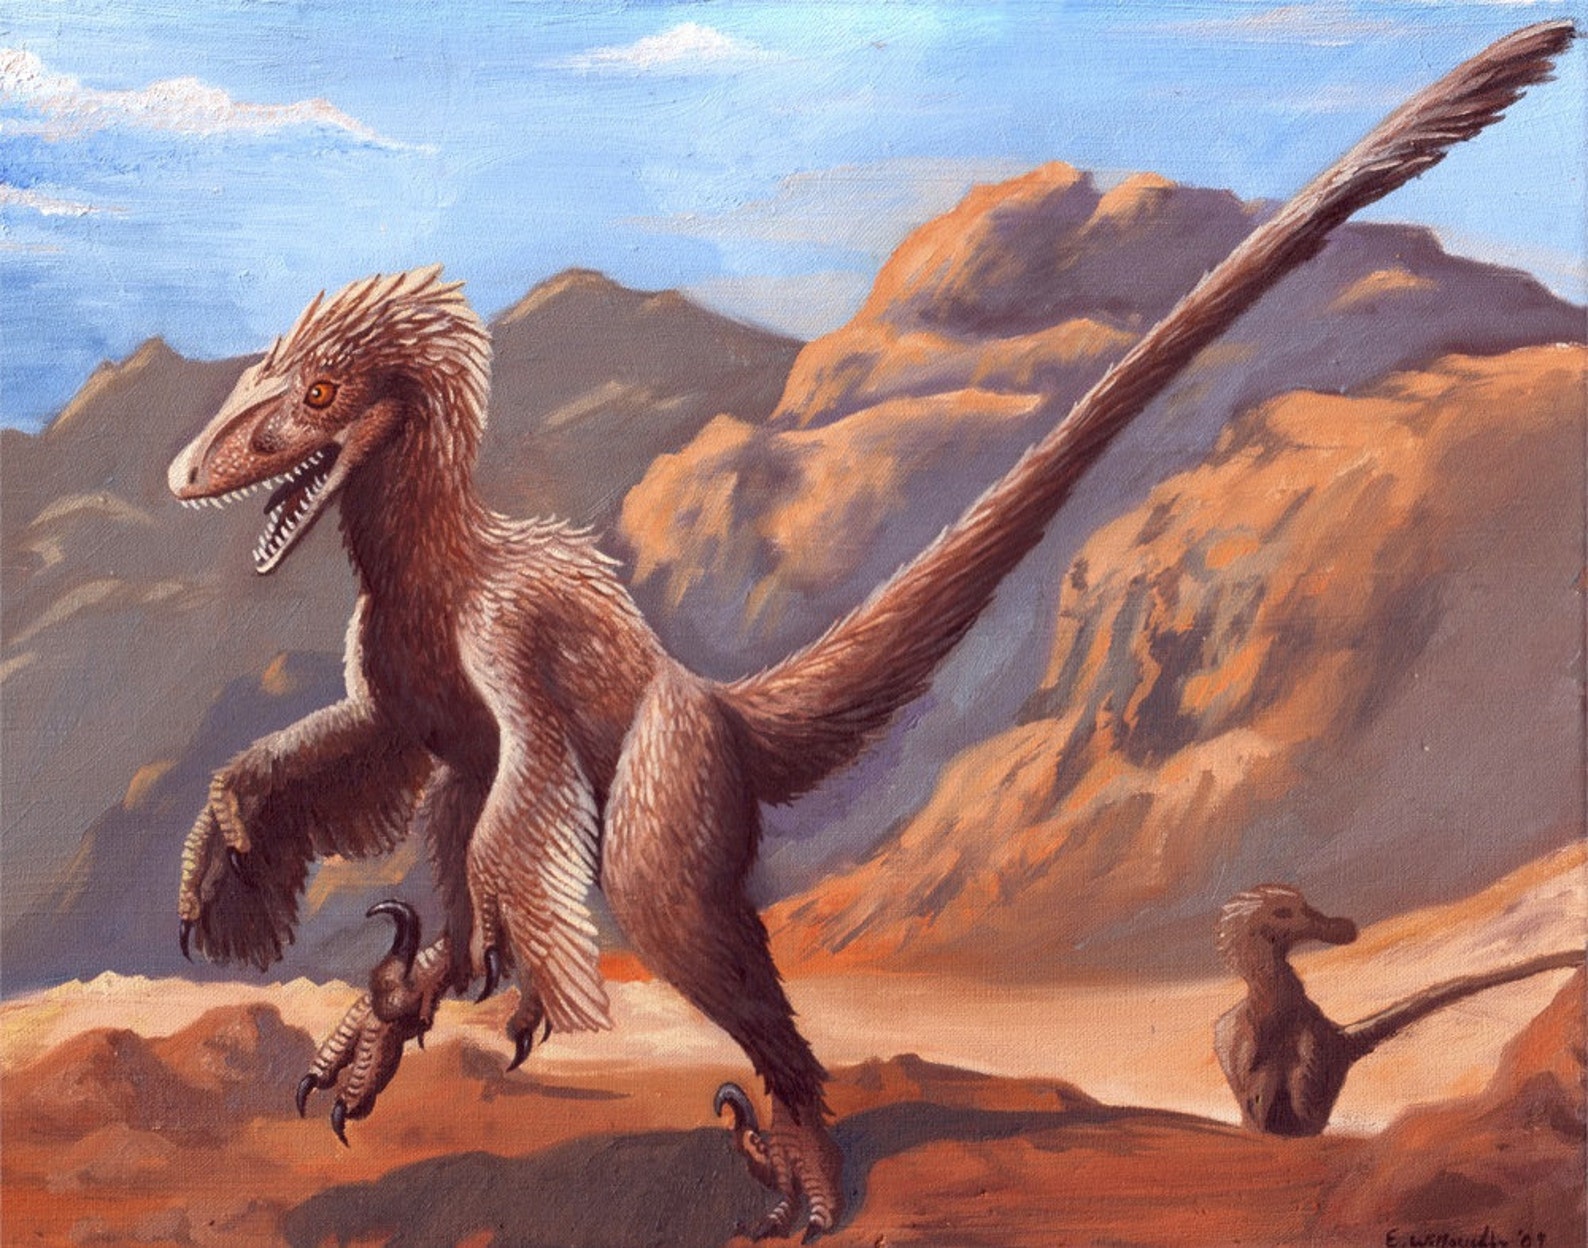 Динозавр велоцераптор. Velociraptor mongoliensis. Велоцираптор mongoliensis. "Дейноних".